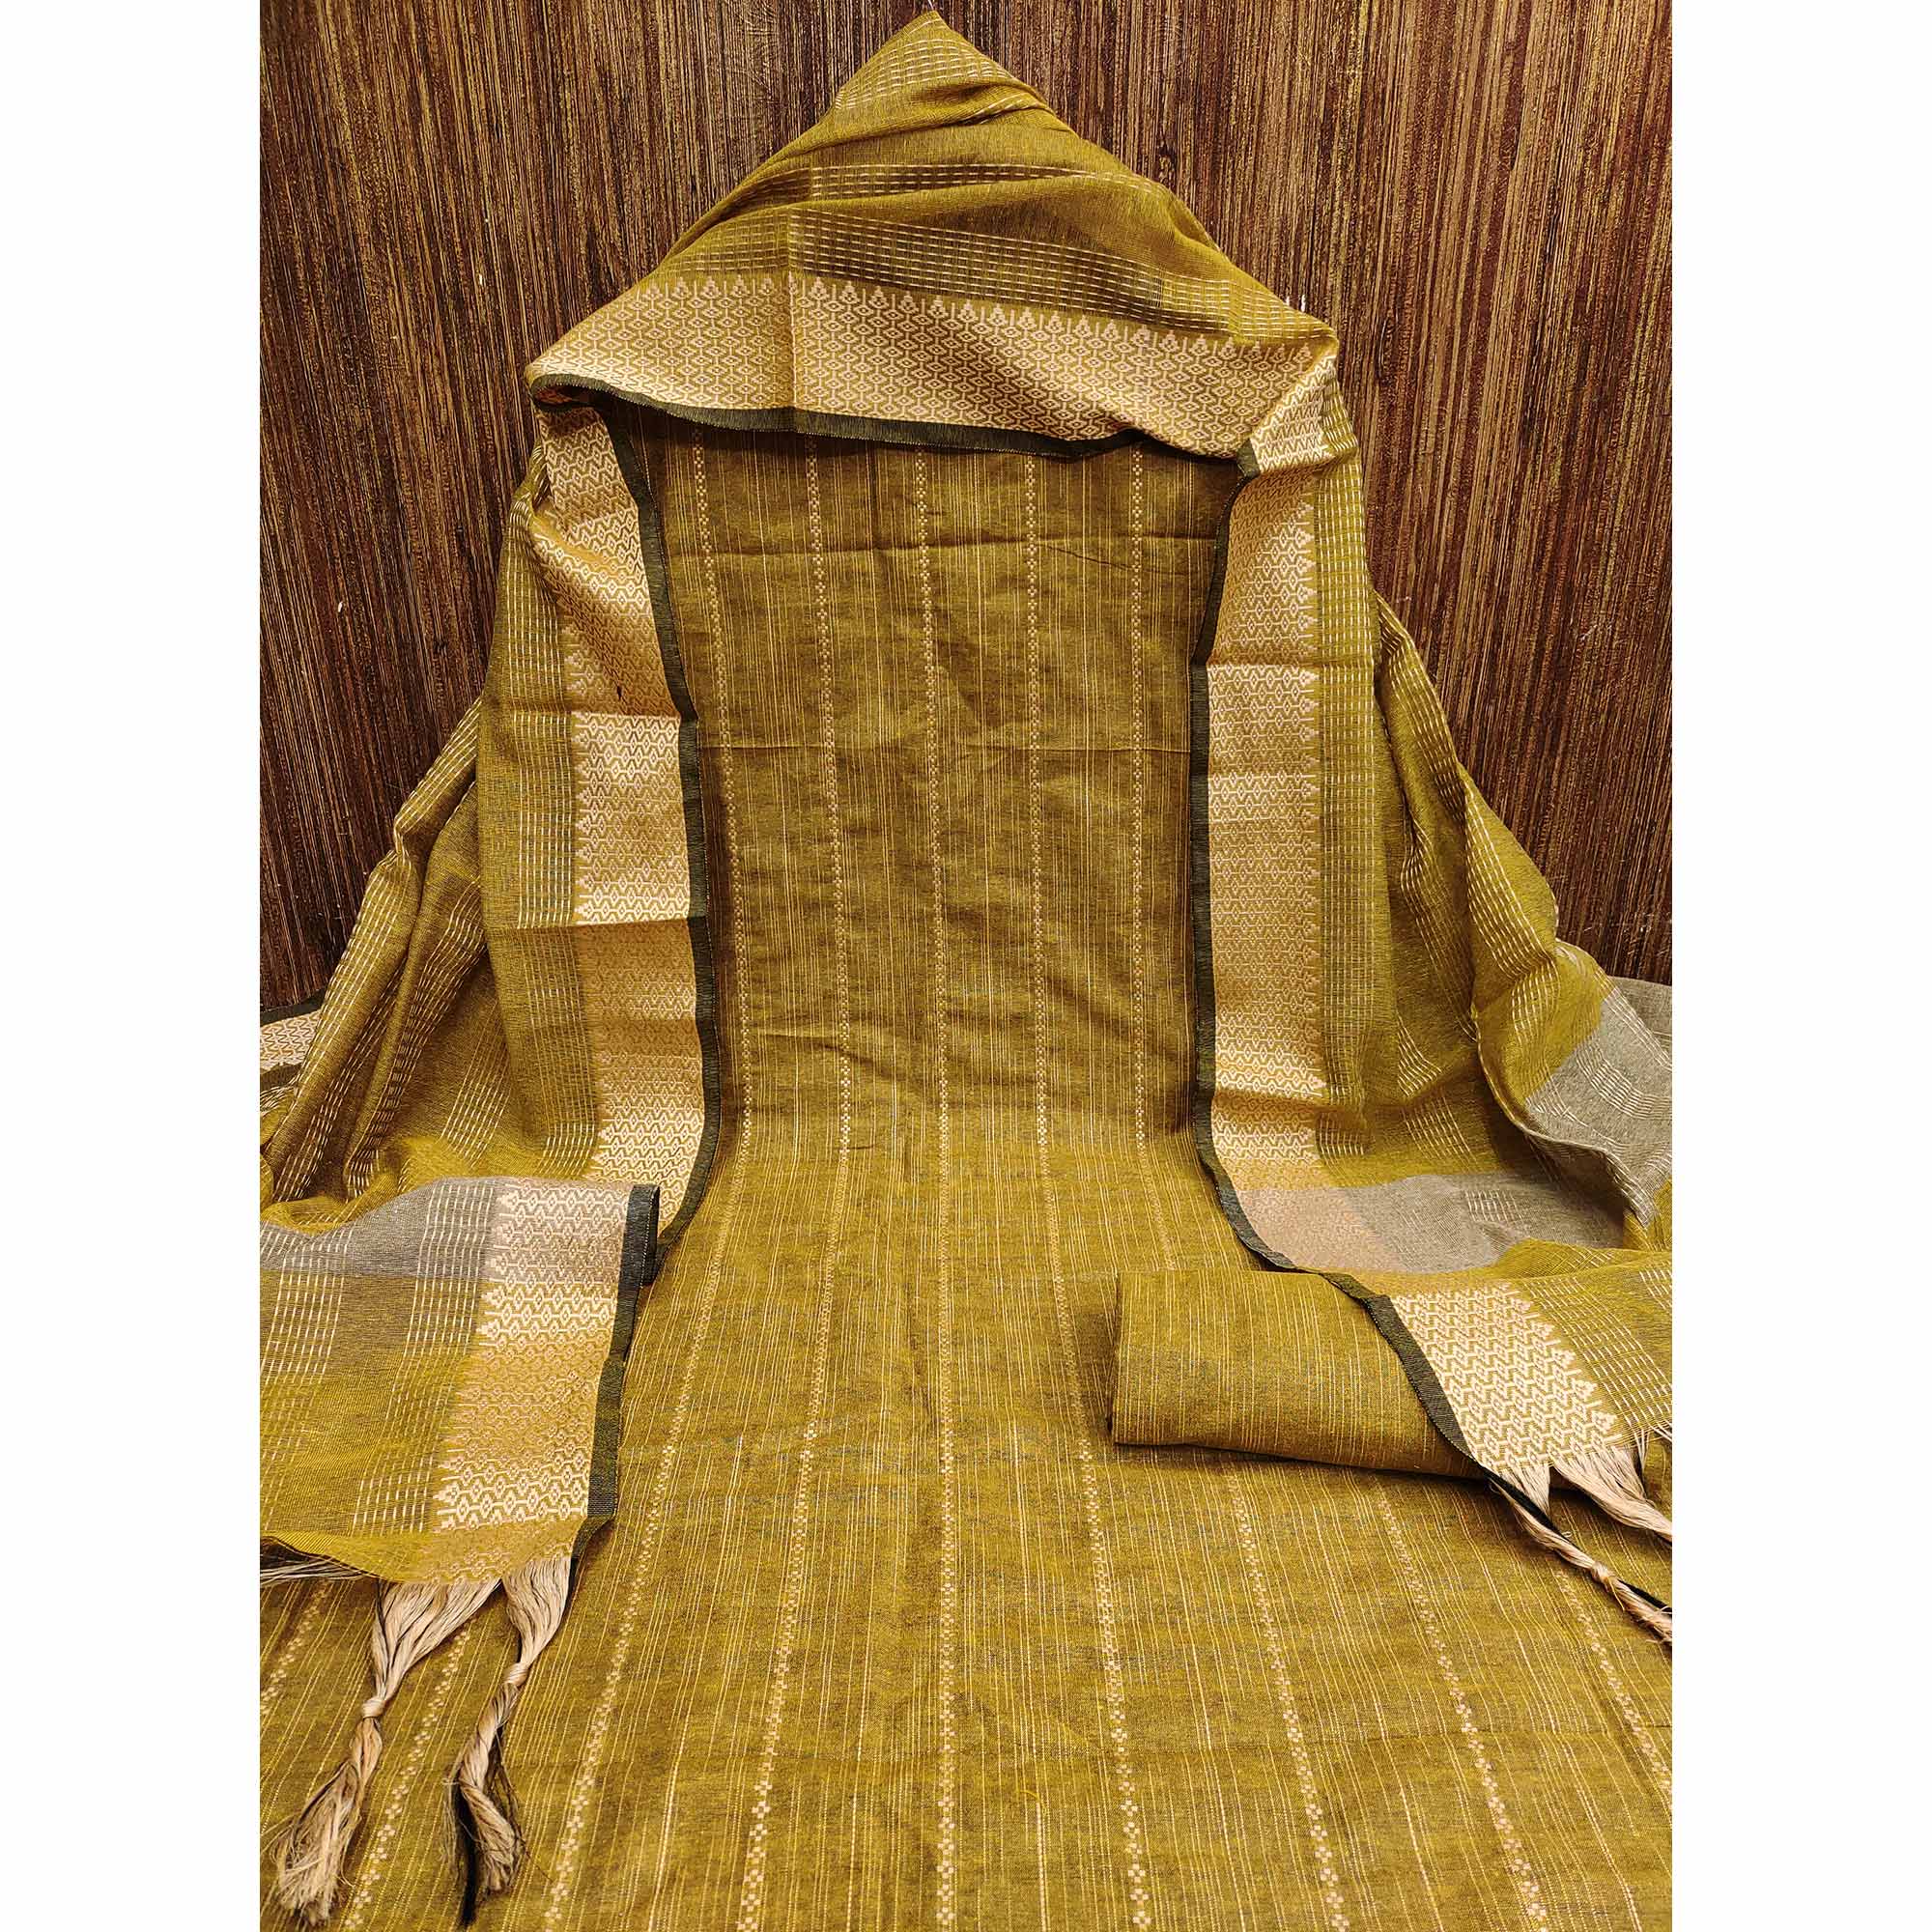 Mustard Woven Cotton Blend Dress Material